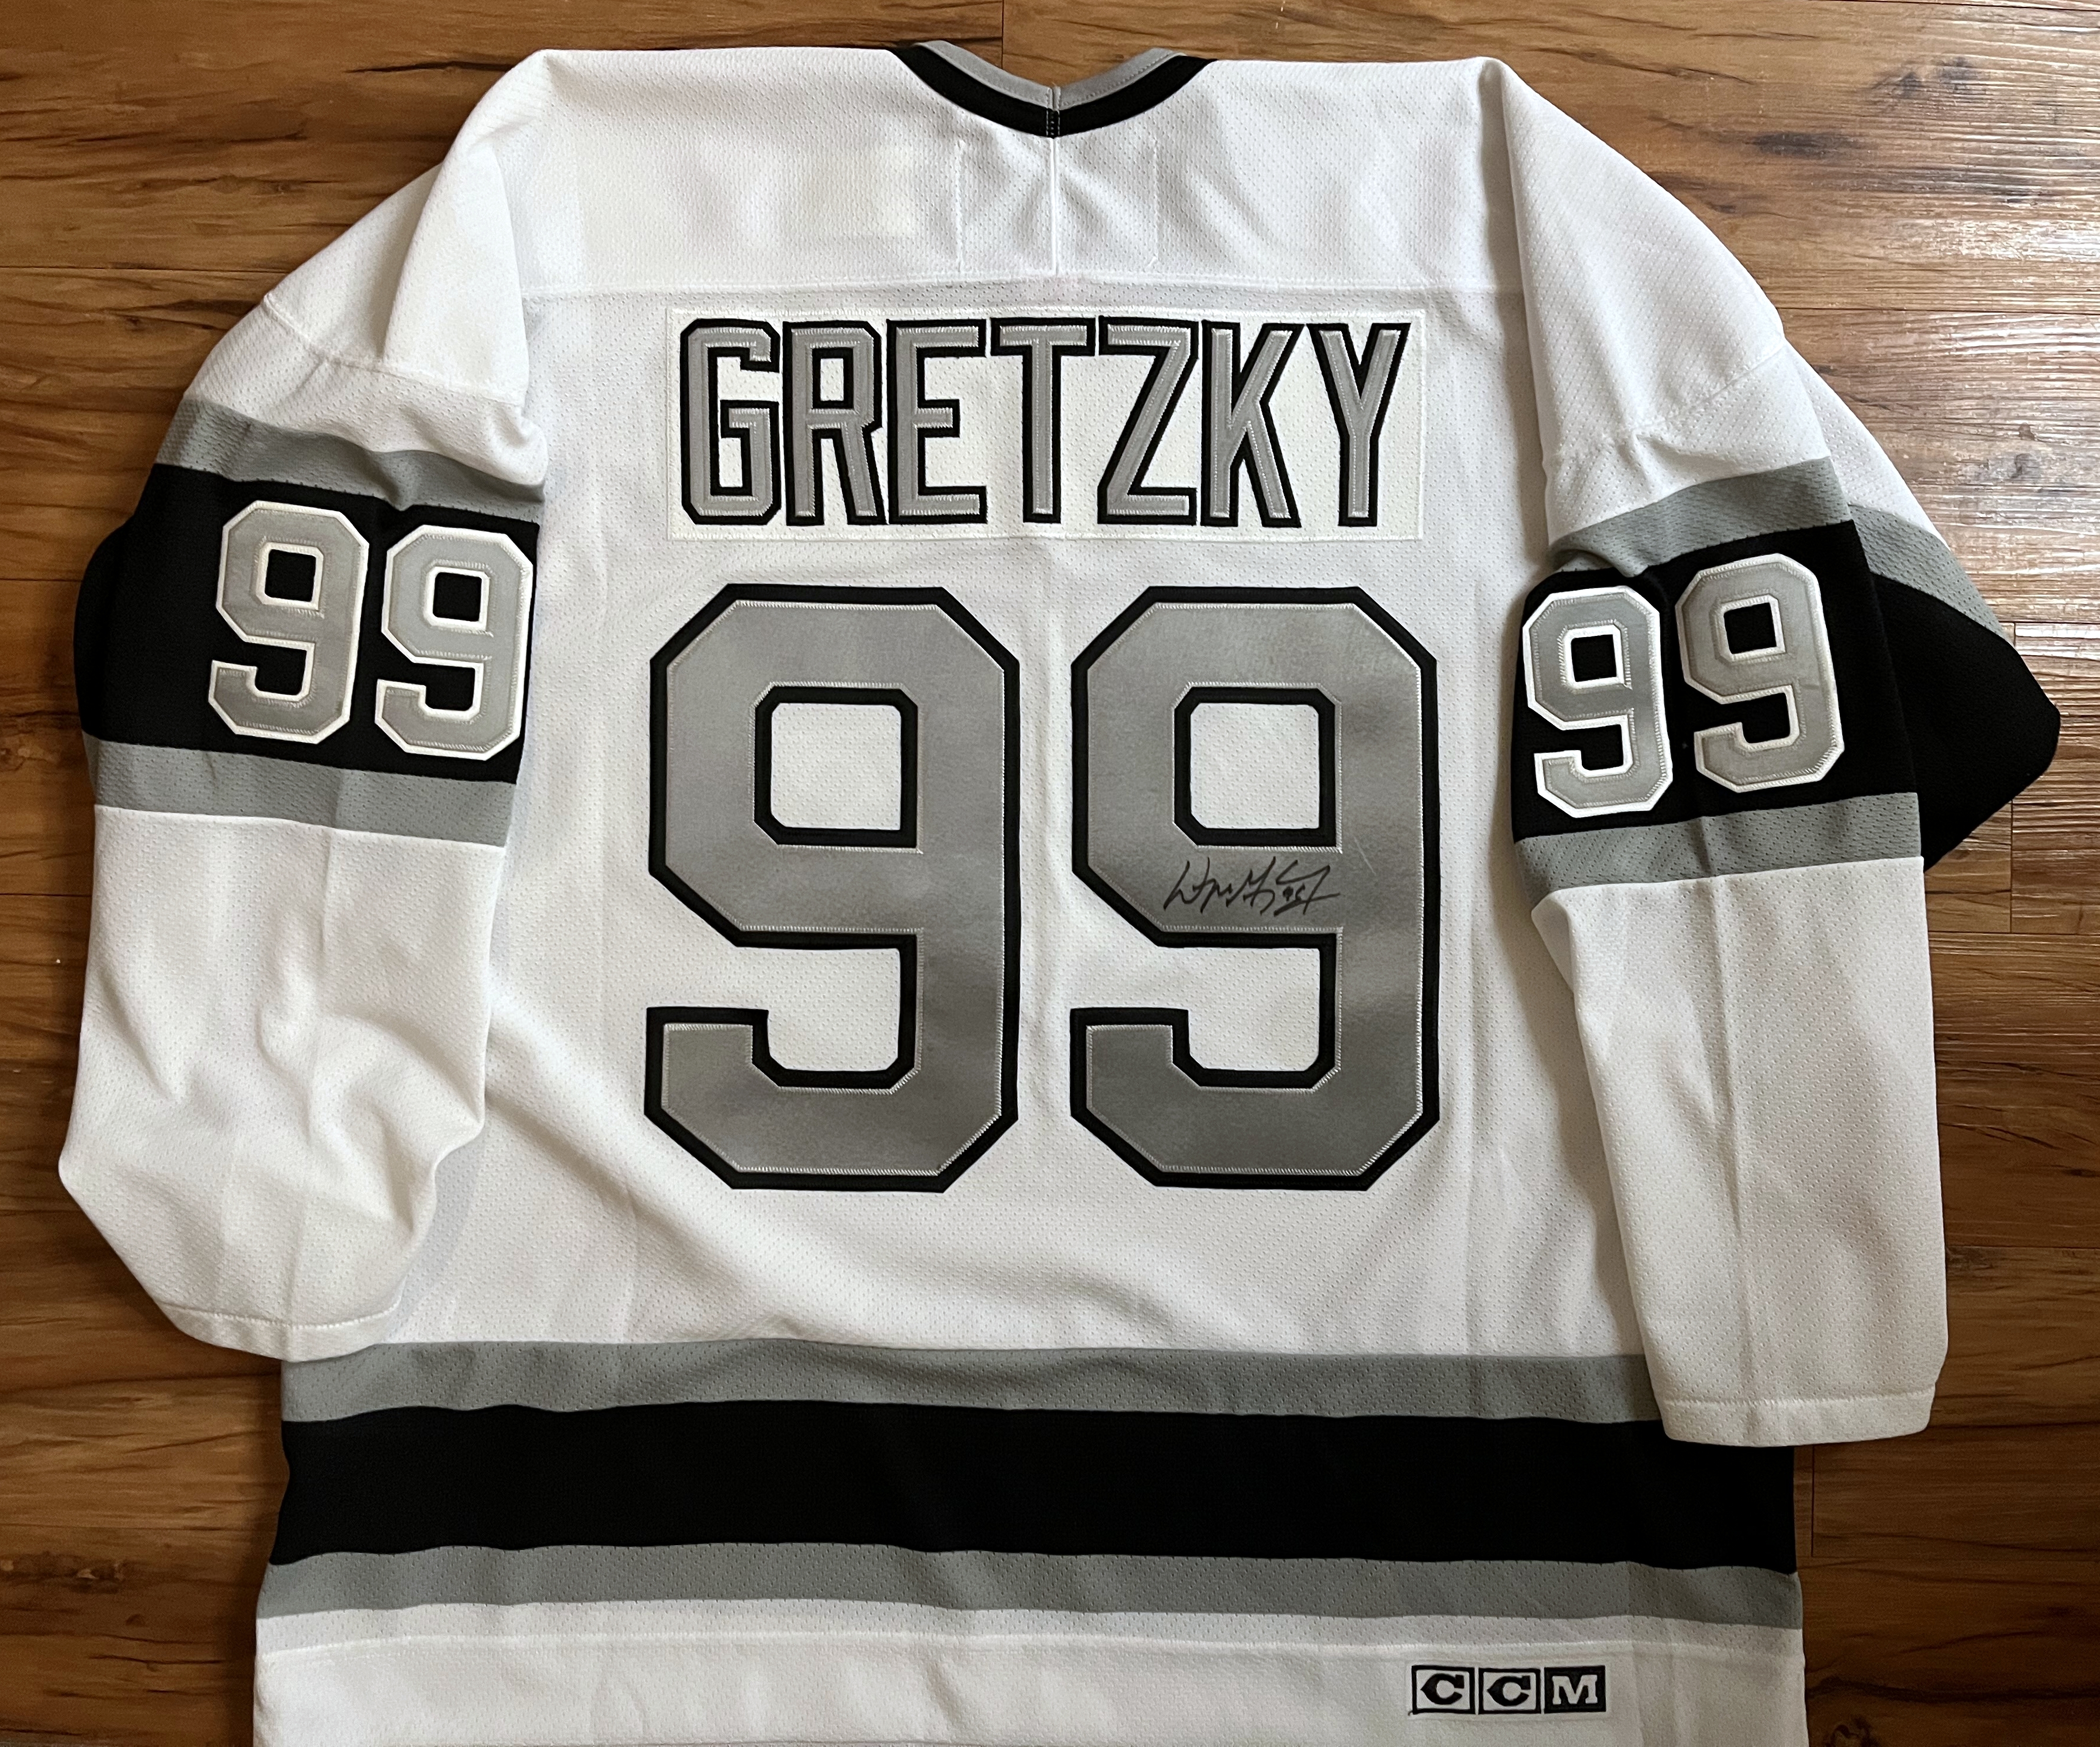 File:Wayne Gretzky Los Angeles Kings jersey.jpg - Wikimedia Commons